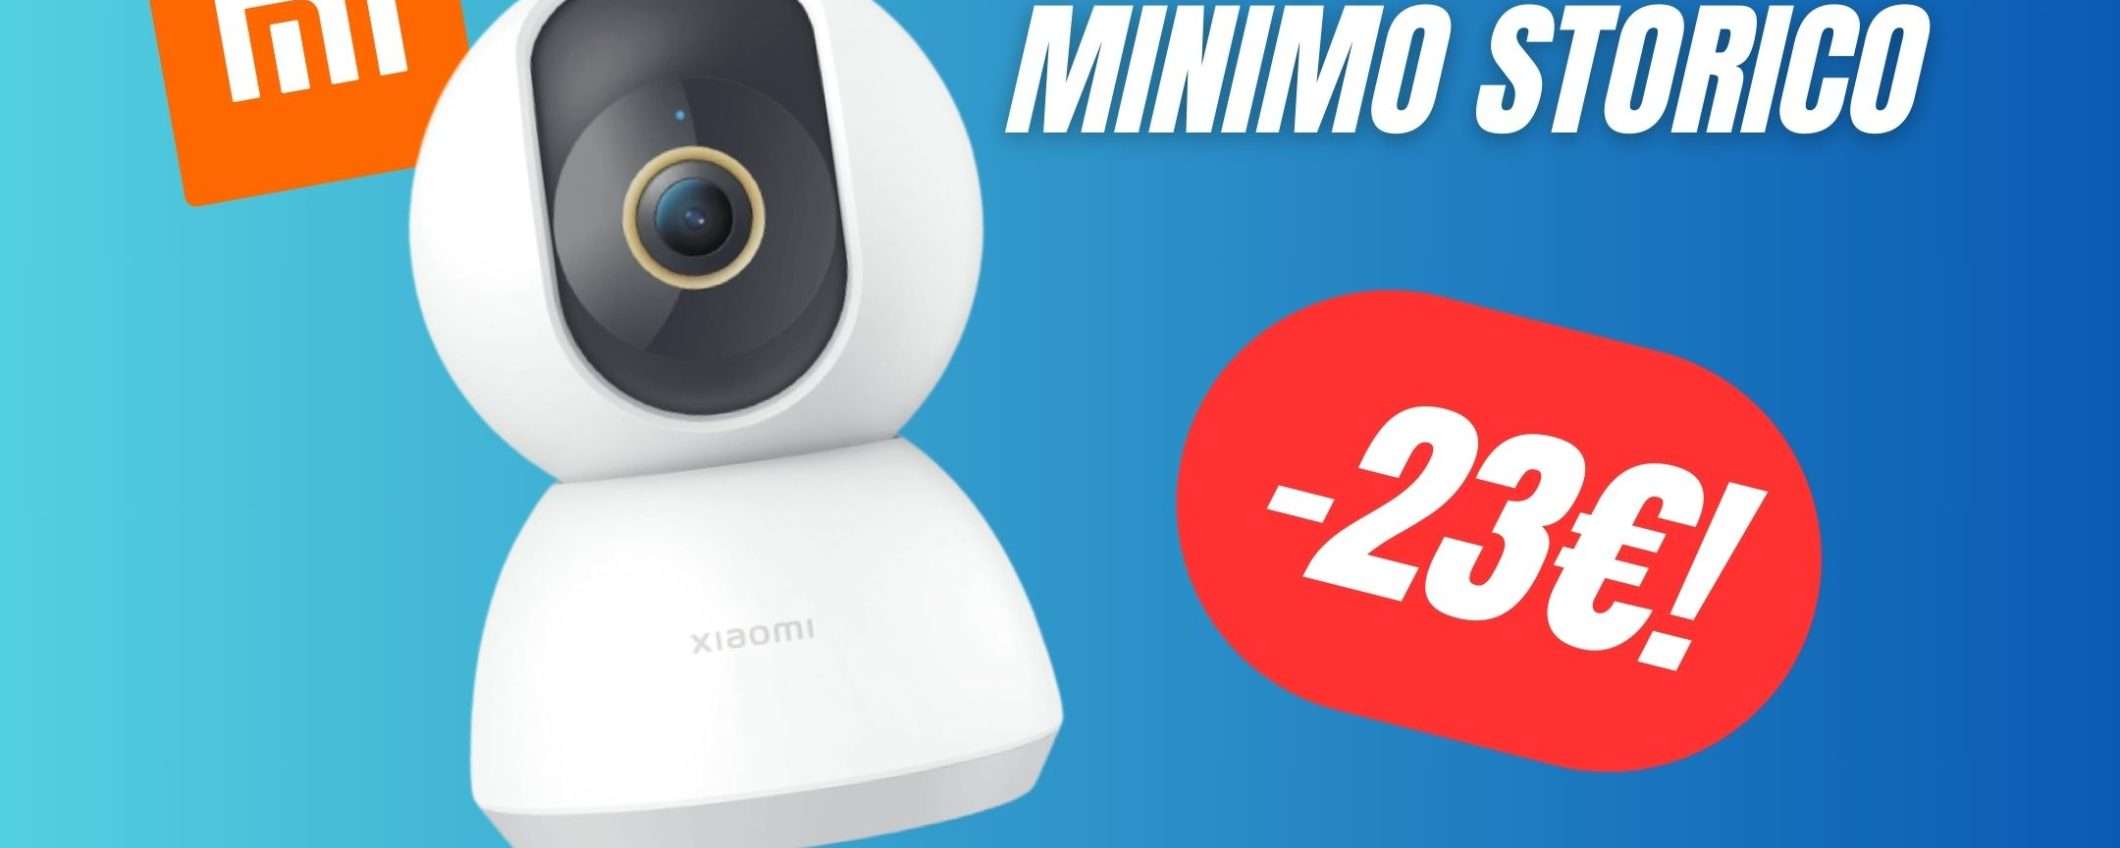 MINIMO STORICO per questa Videocamera di Sicurezza Xiaomi! (-23€)